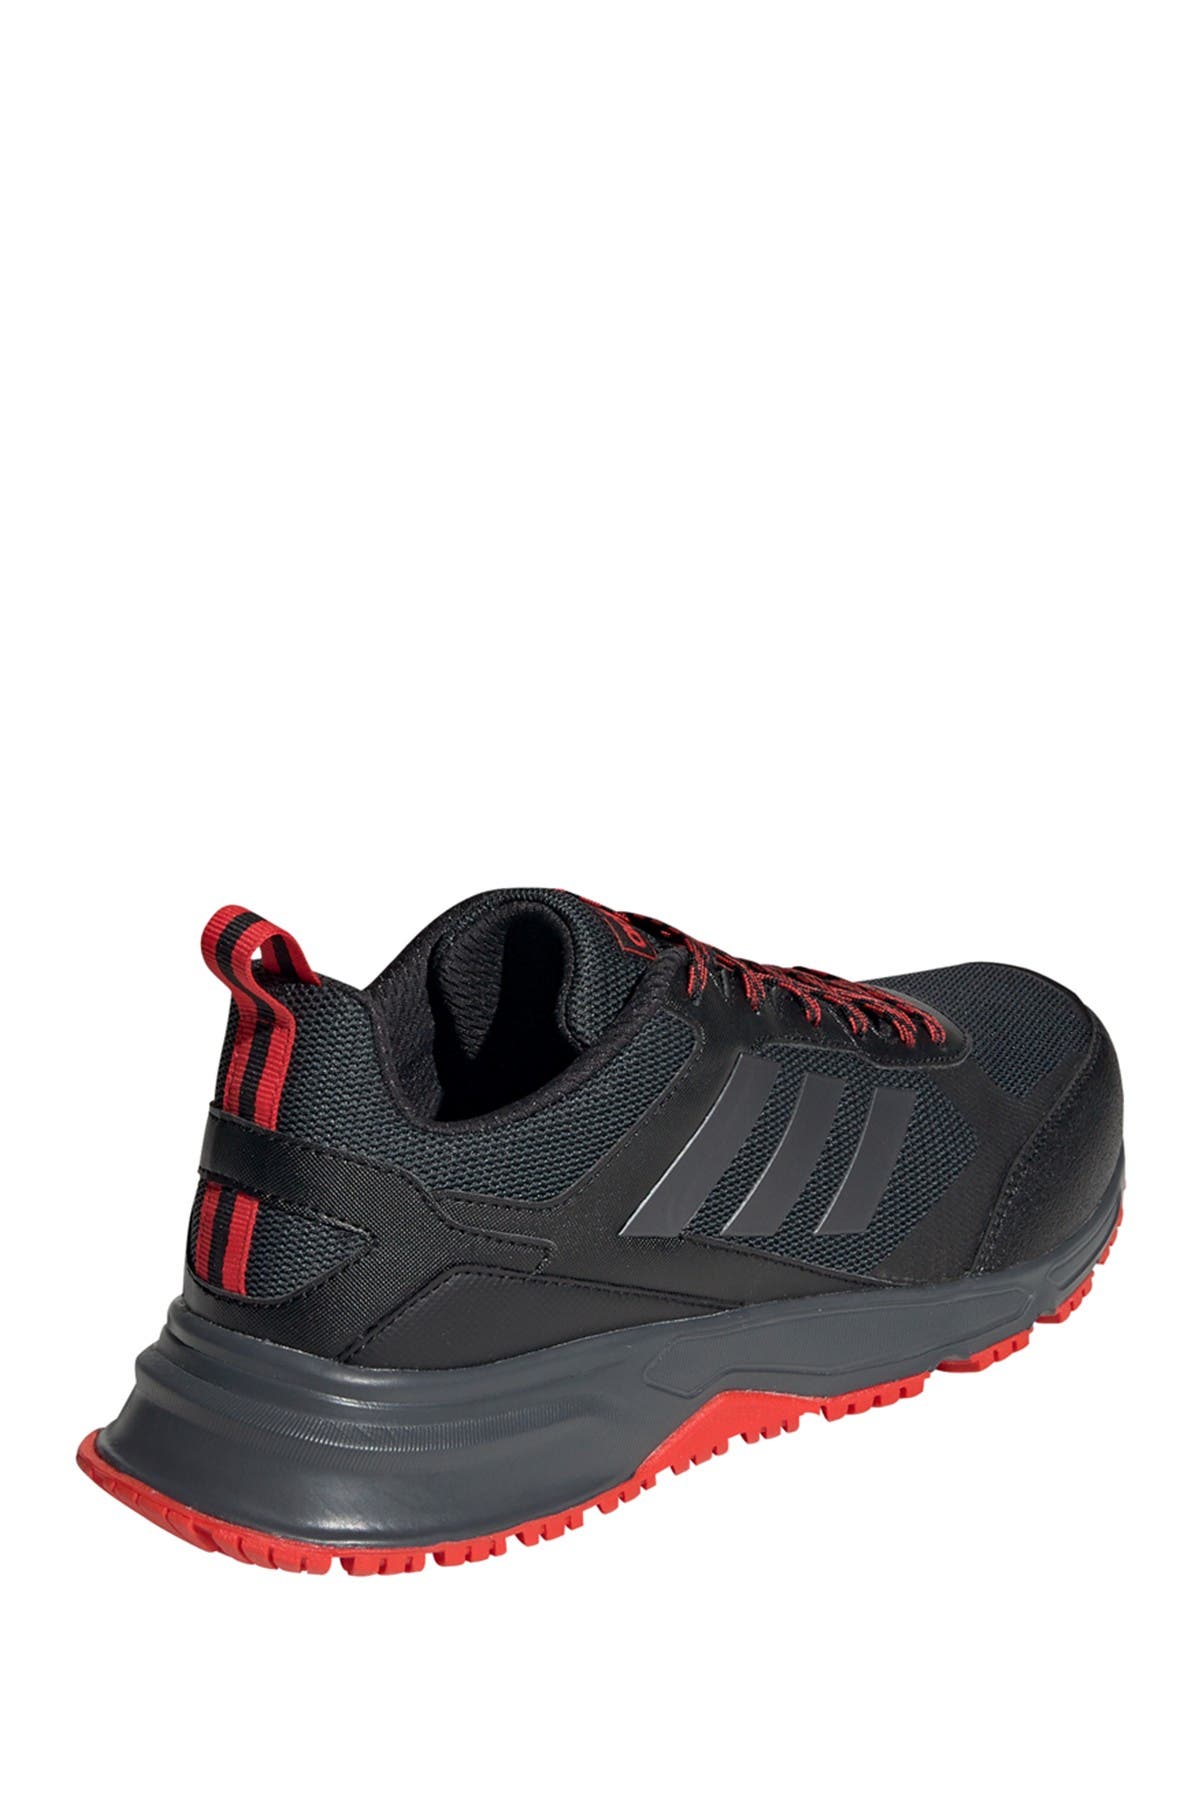 adidas rockadia trail shoes